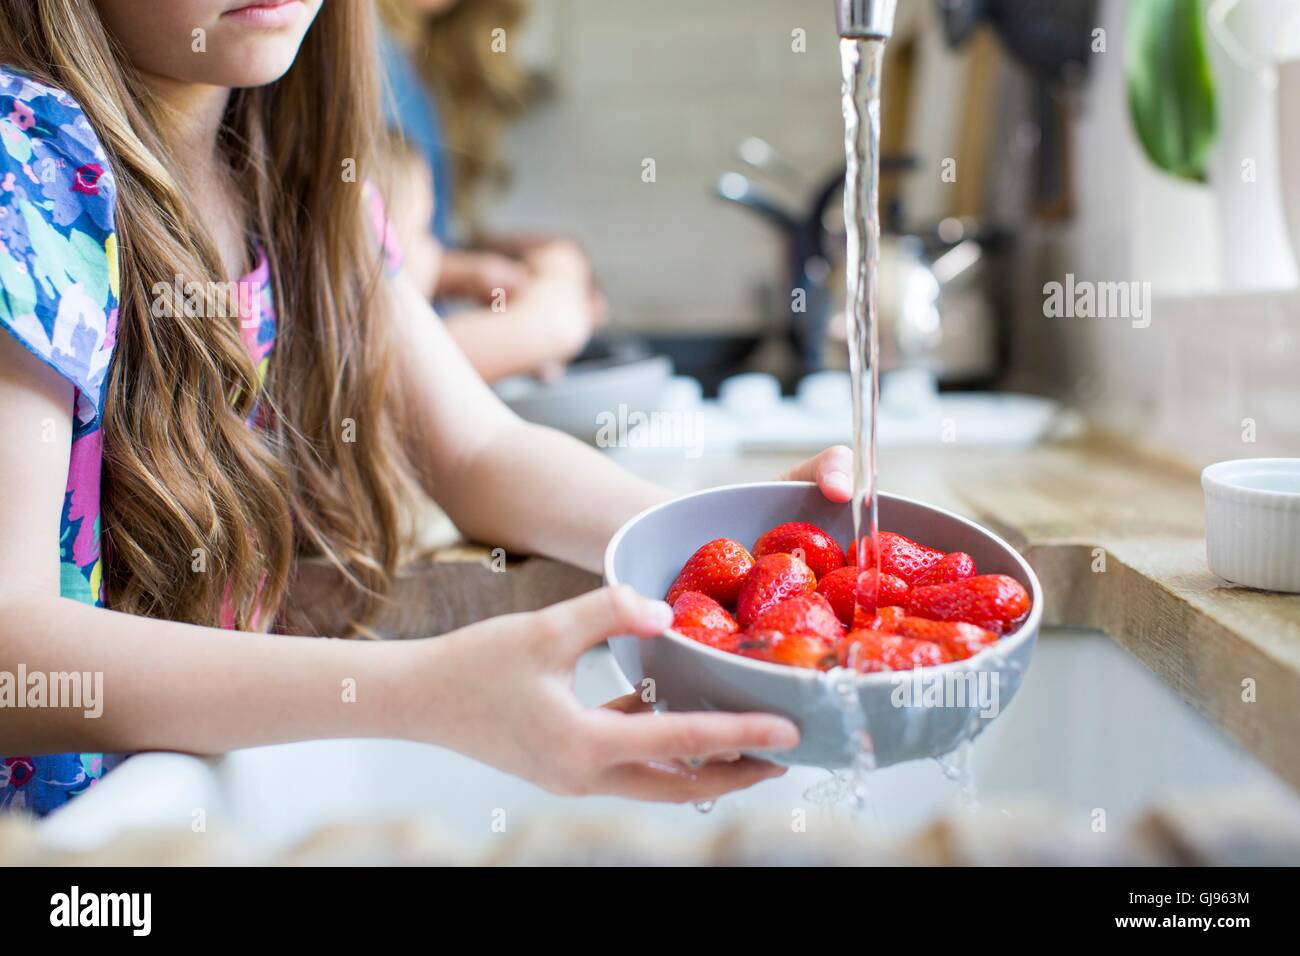 Liberados de la propiedad. Modelo liberado. Chica lavado fresas frescas en el fregadero. Foto de stock